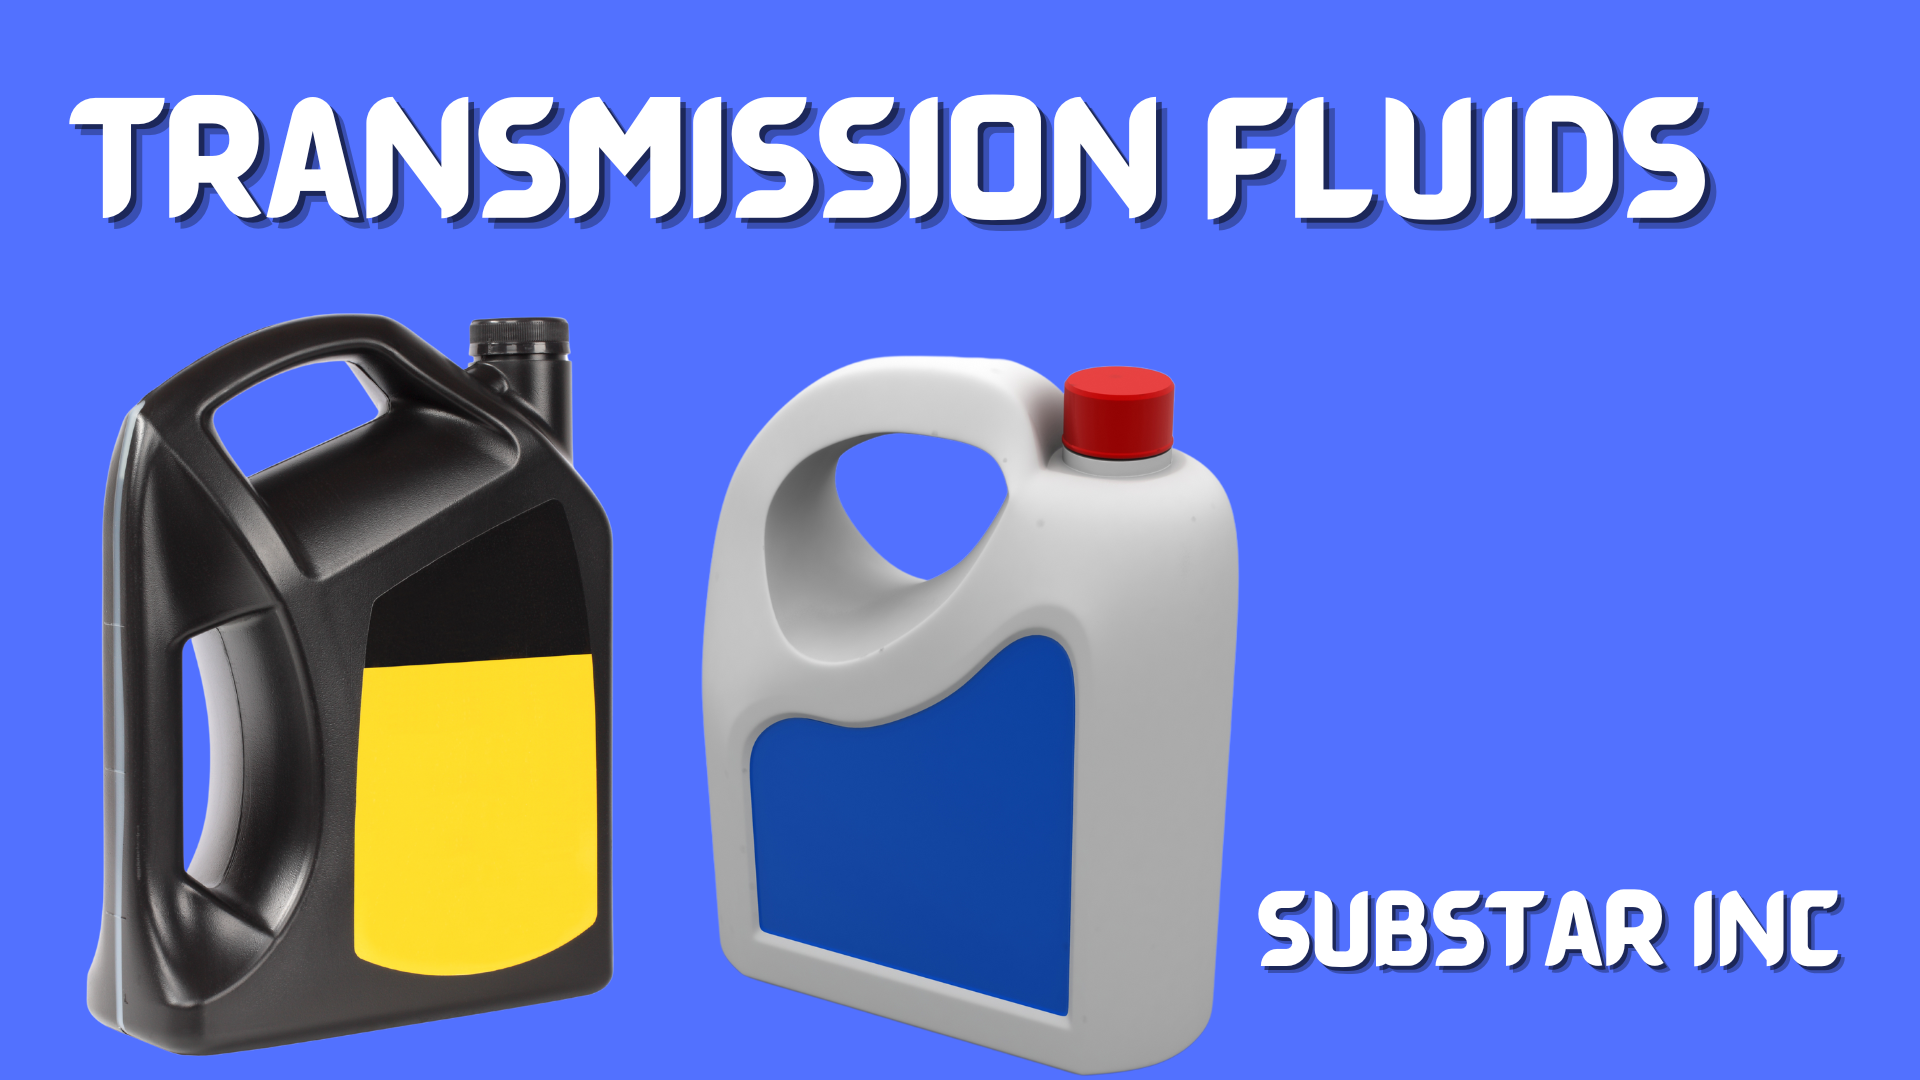 Types of Transmission fluids